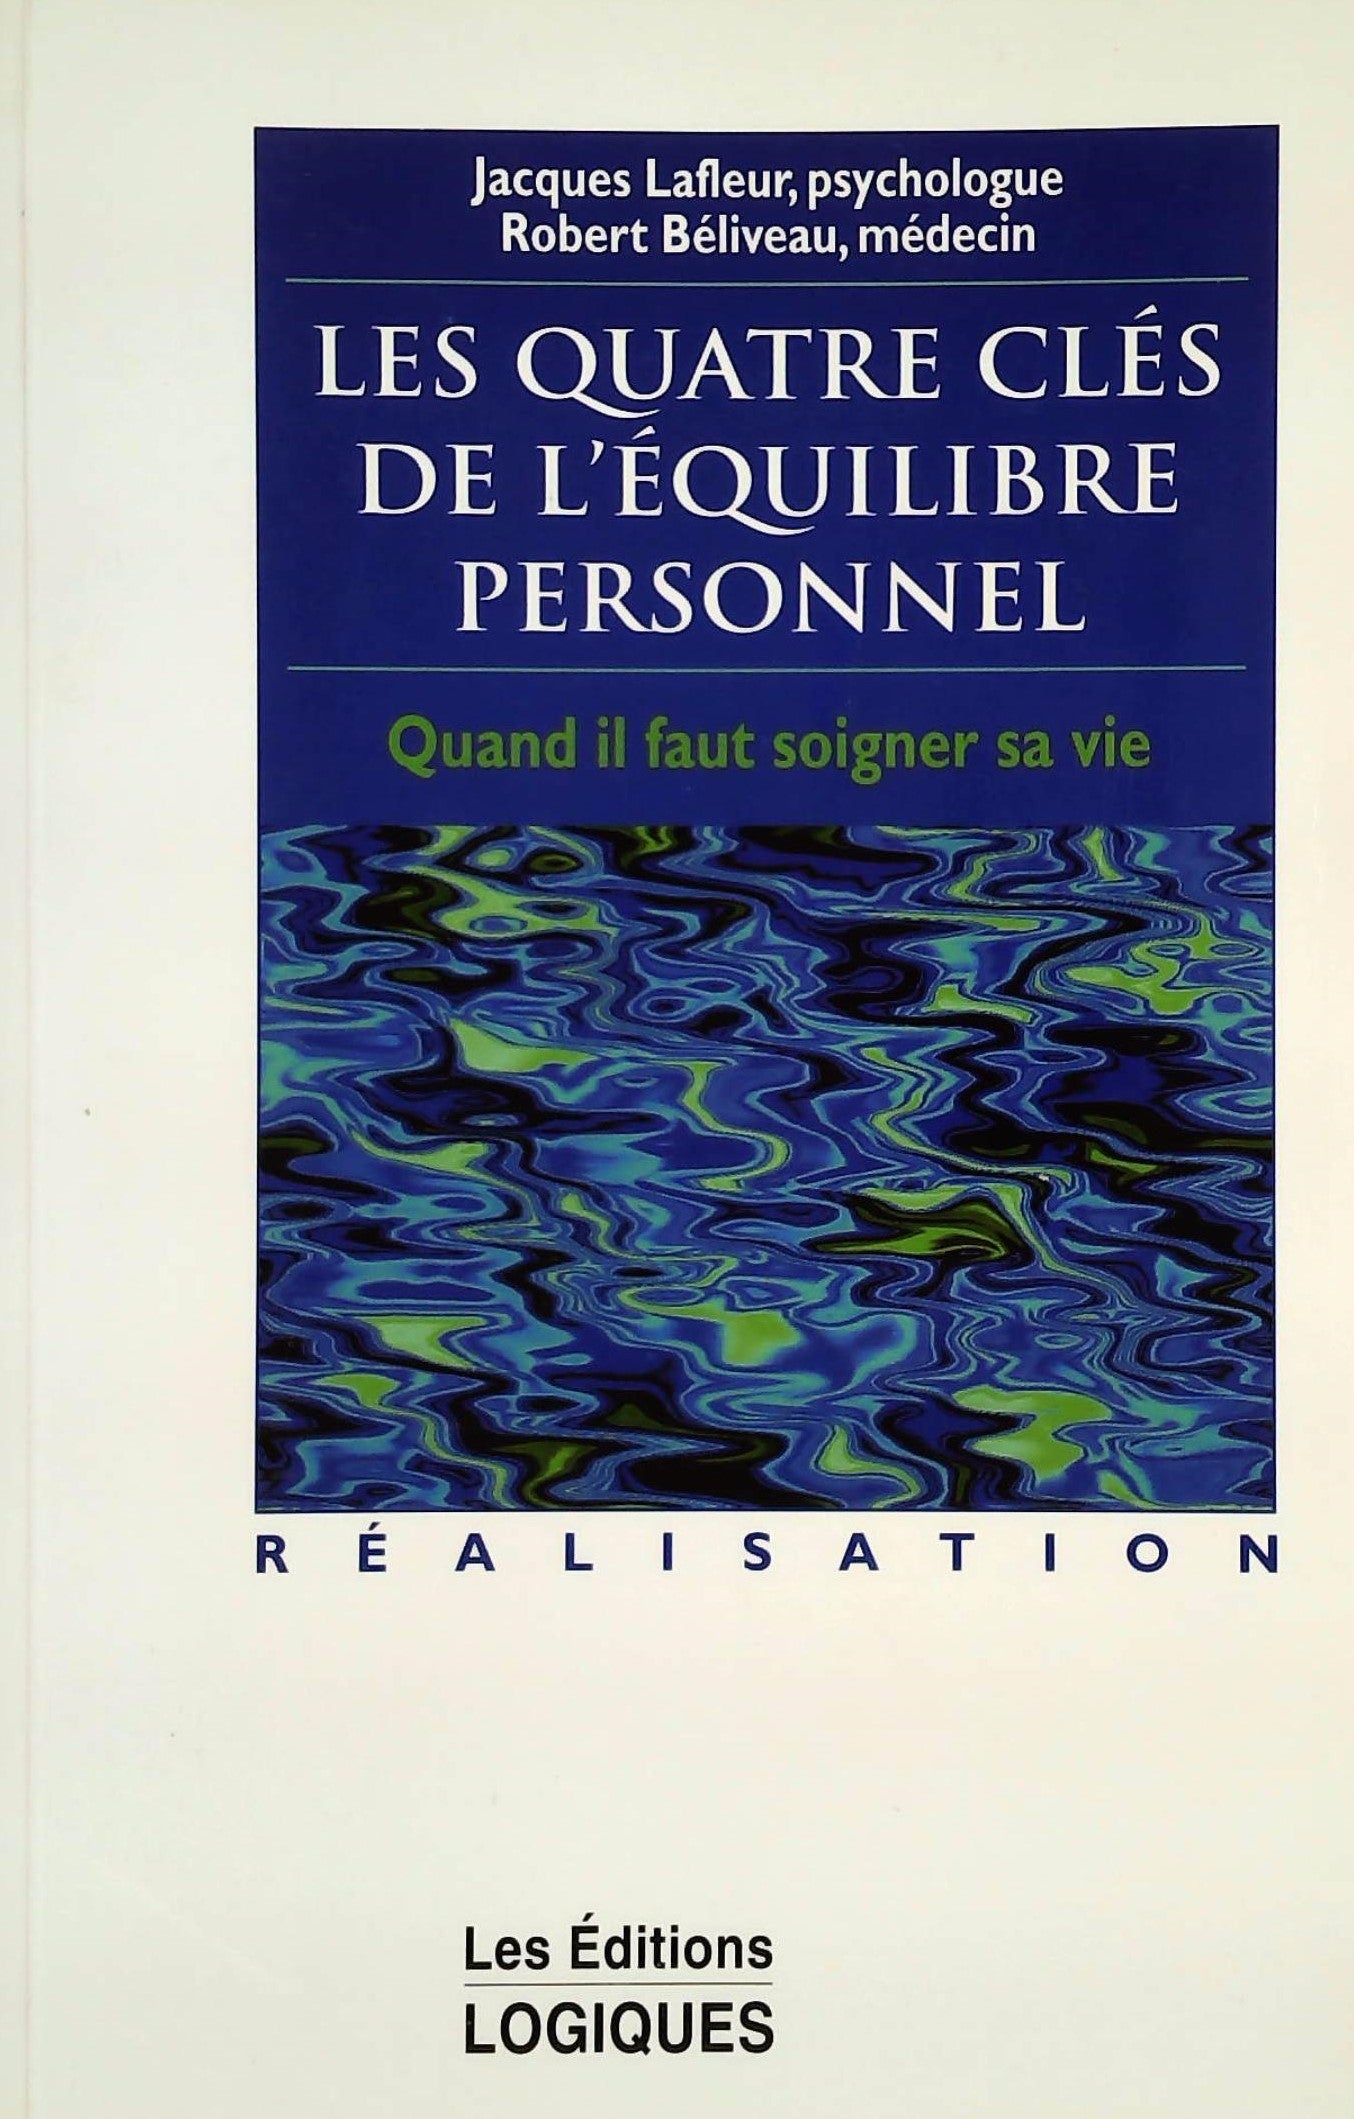 Livre ISBN 2893812309 Les quatre clés de l'équilibre personnel: Quand il faut soigner sa vie (Jacques Lafleur)